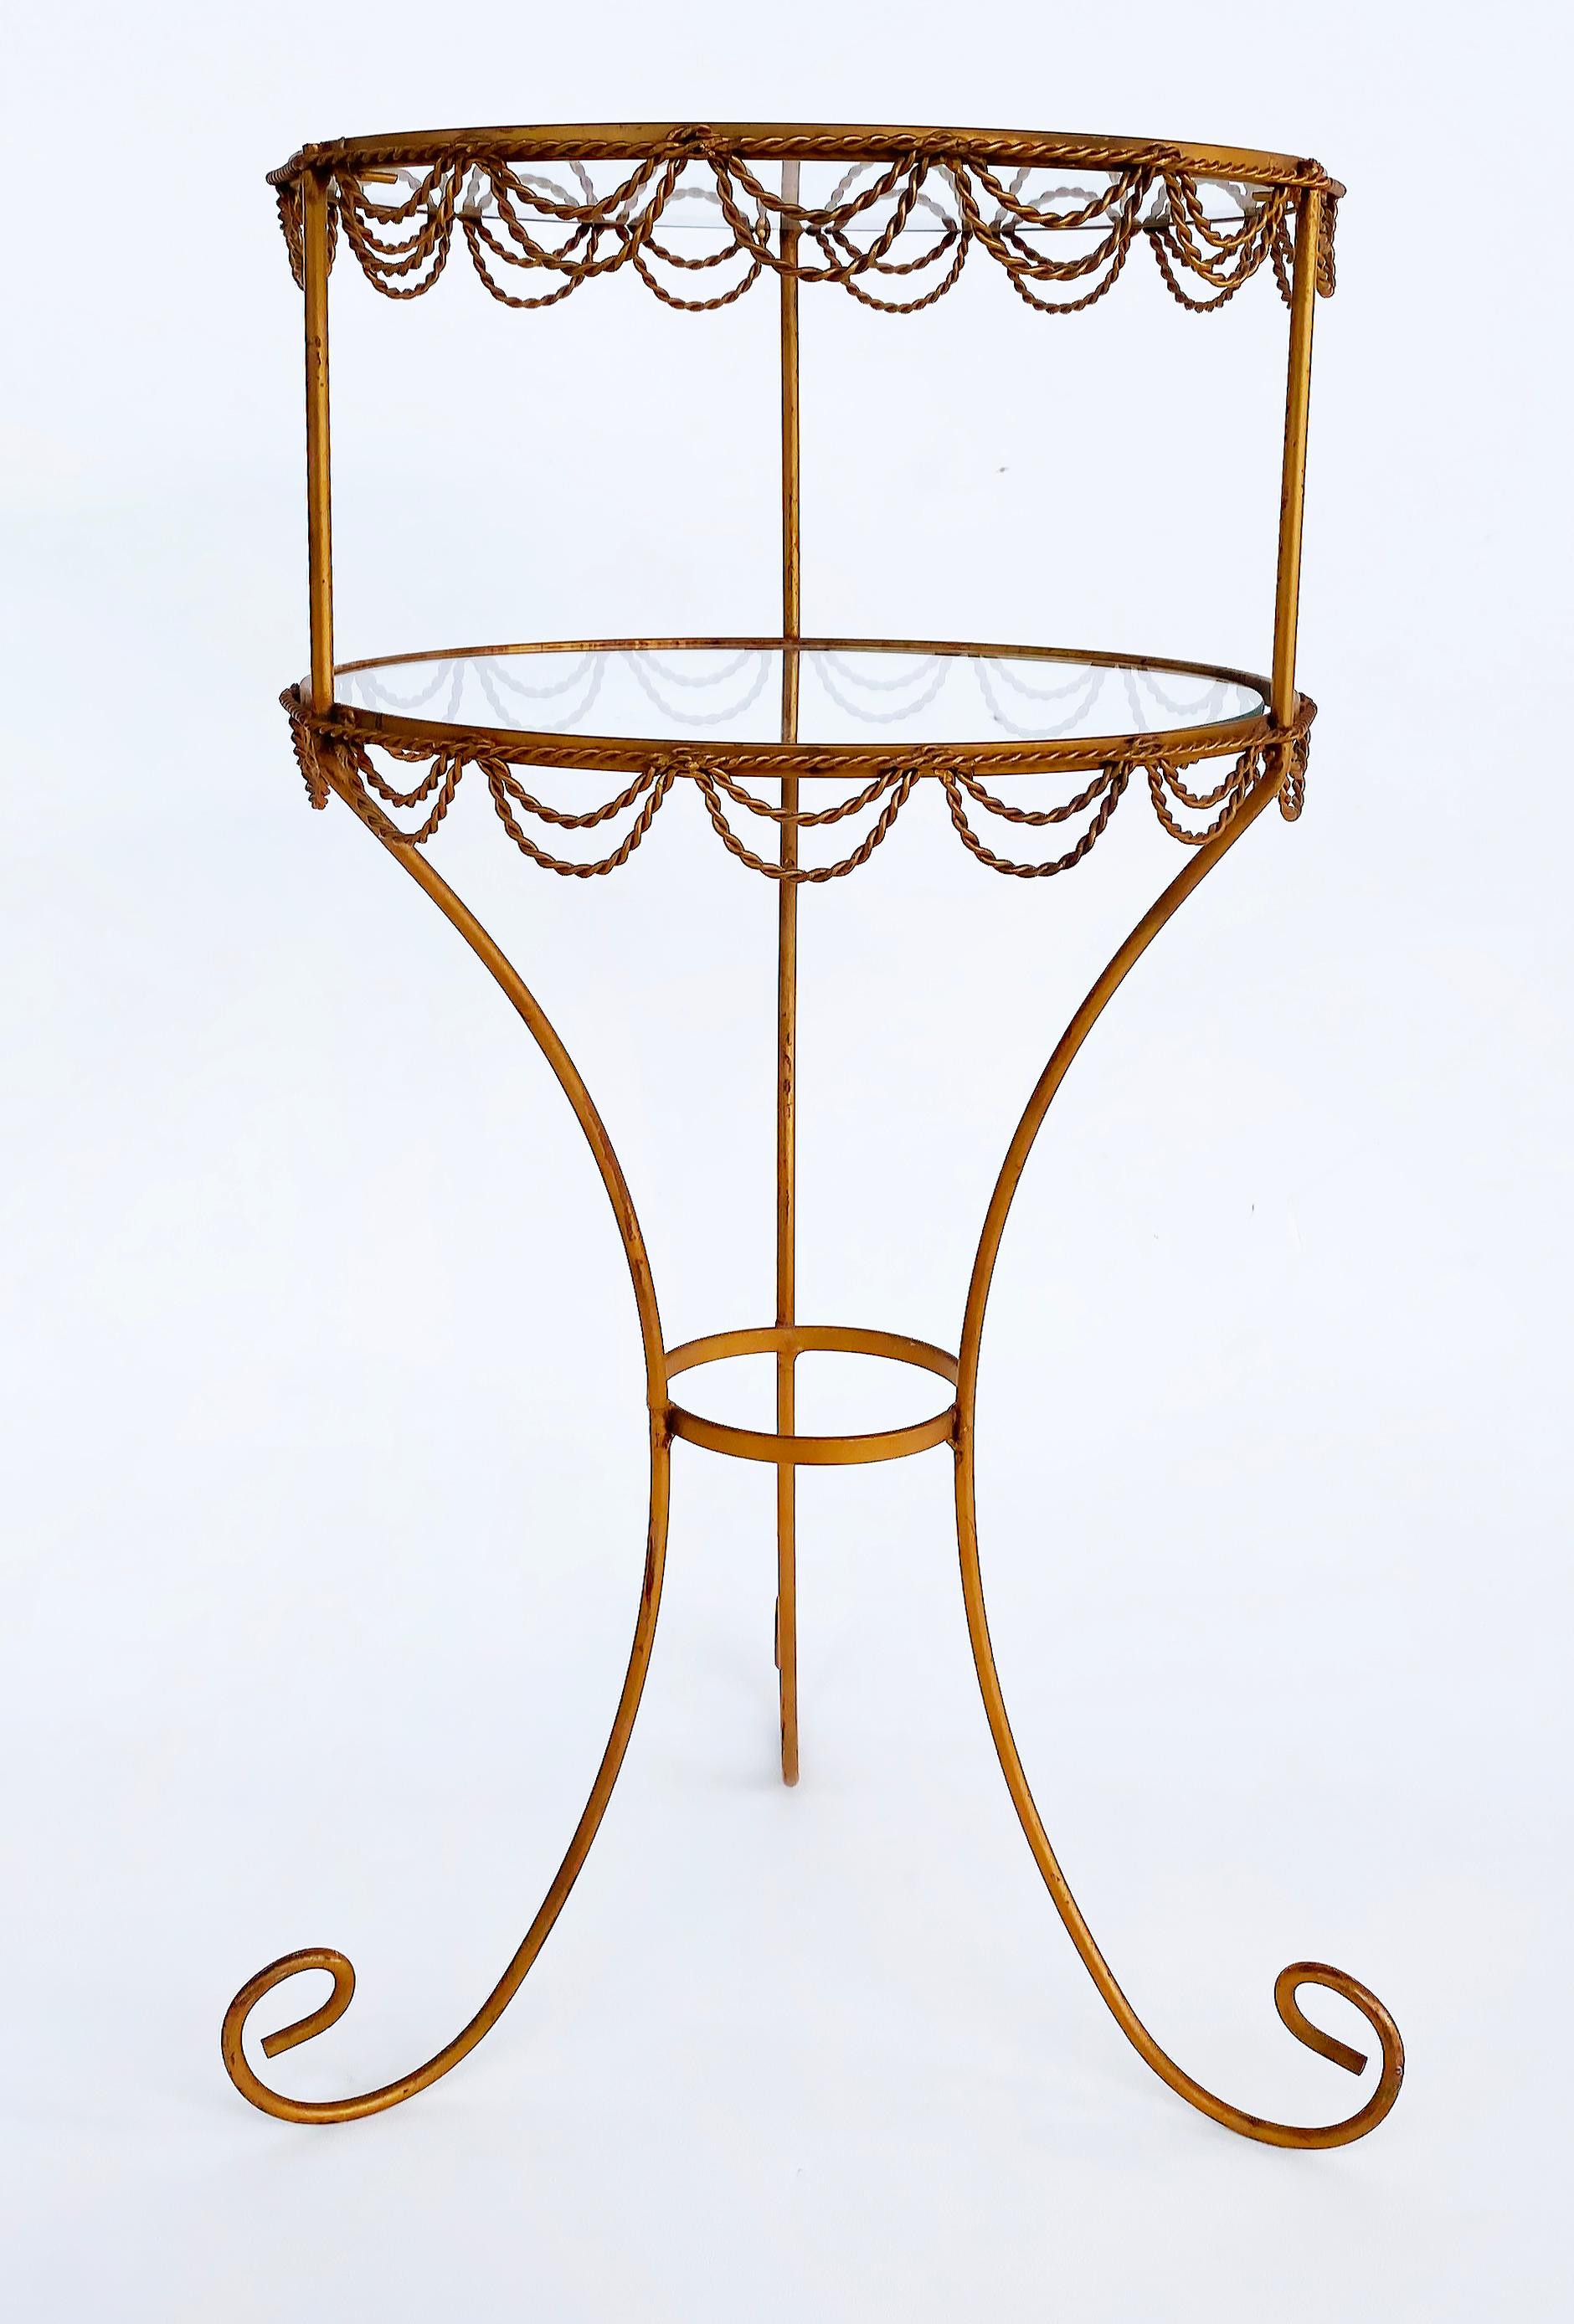 Vintage Französisch 2-stöckigen vergoldeten Eisen Beistelltisch Stand mit Inset Glas 

Zum Verkauf angeboten wird eine fein gestaltete Französisch vergoldet-Eisen zweistöckigen Beistelltisch oder Stand.  Der runde Tisch mit geschwungenen Beinen ist